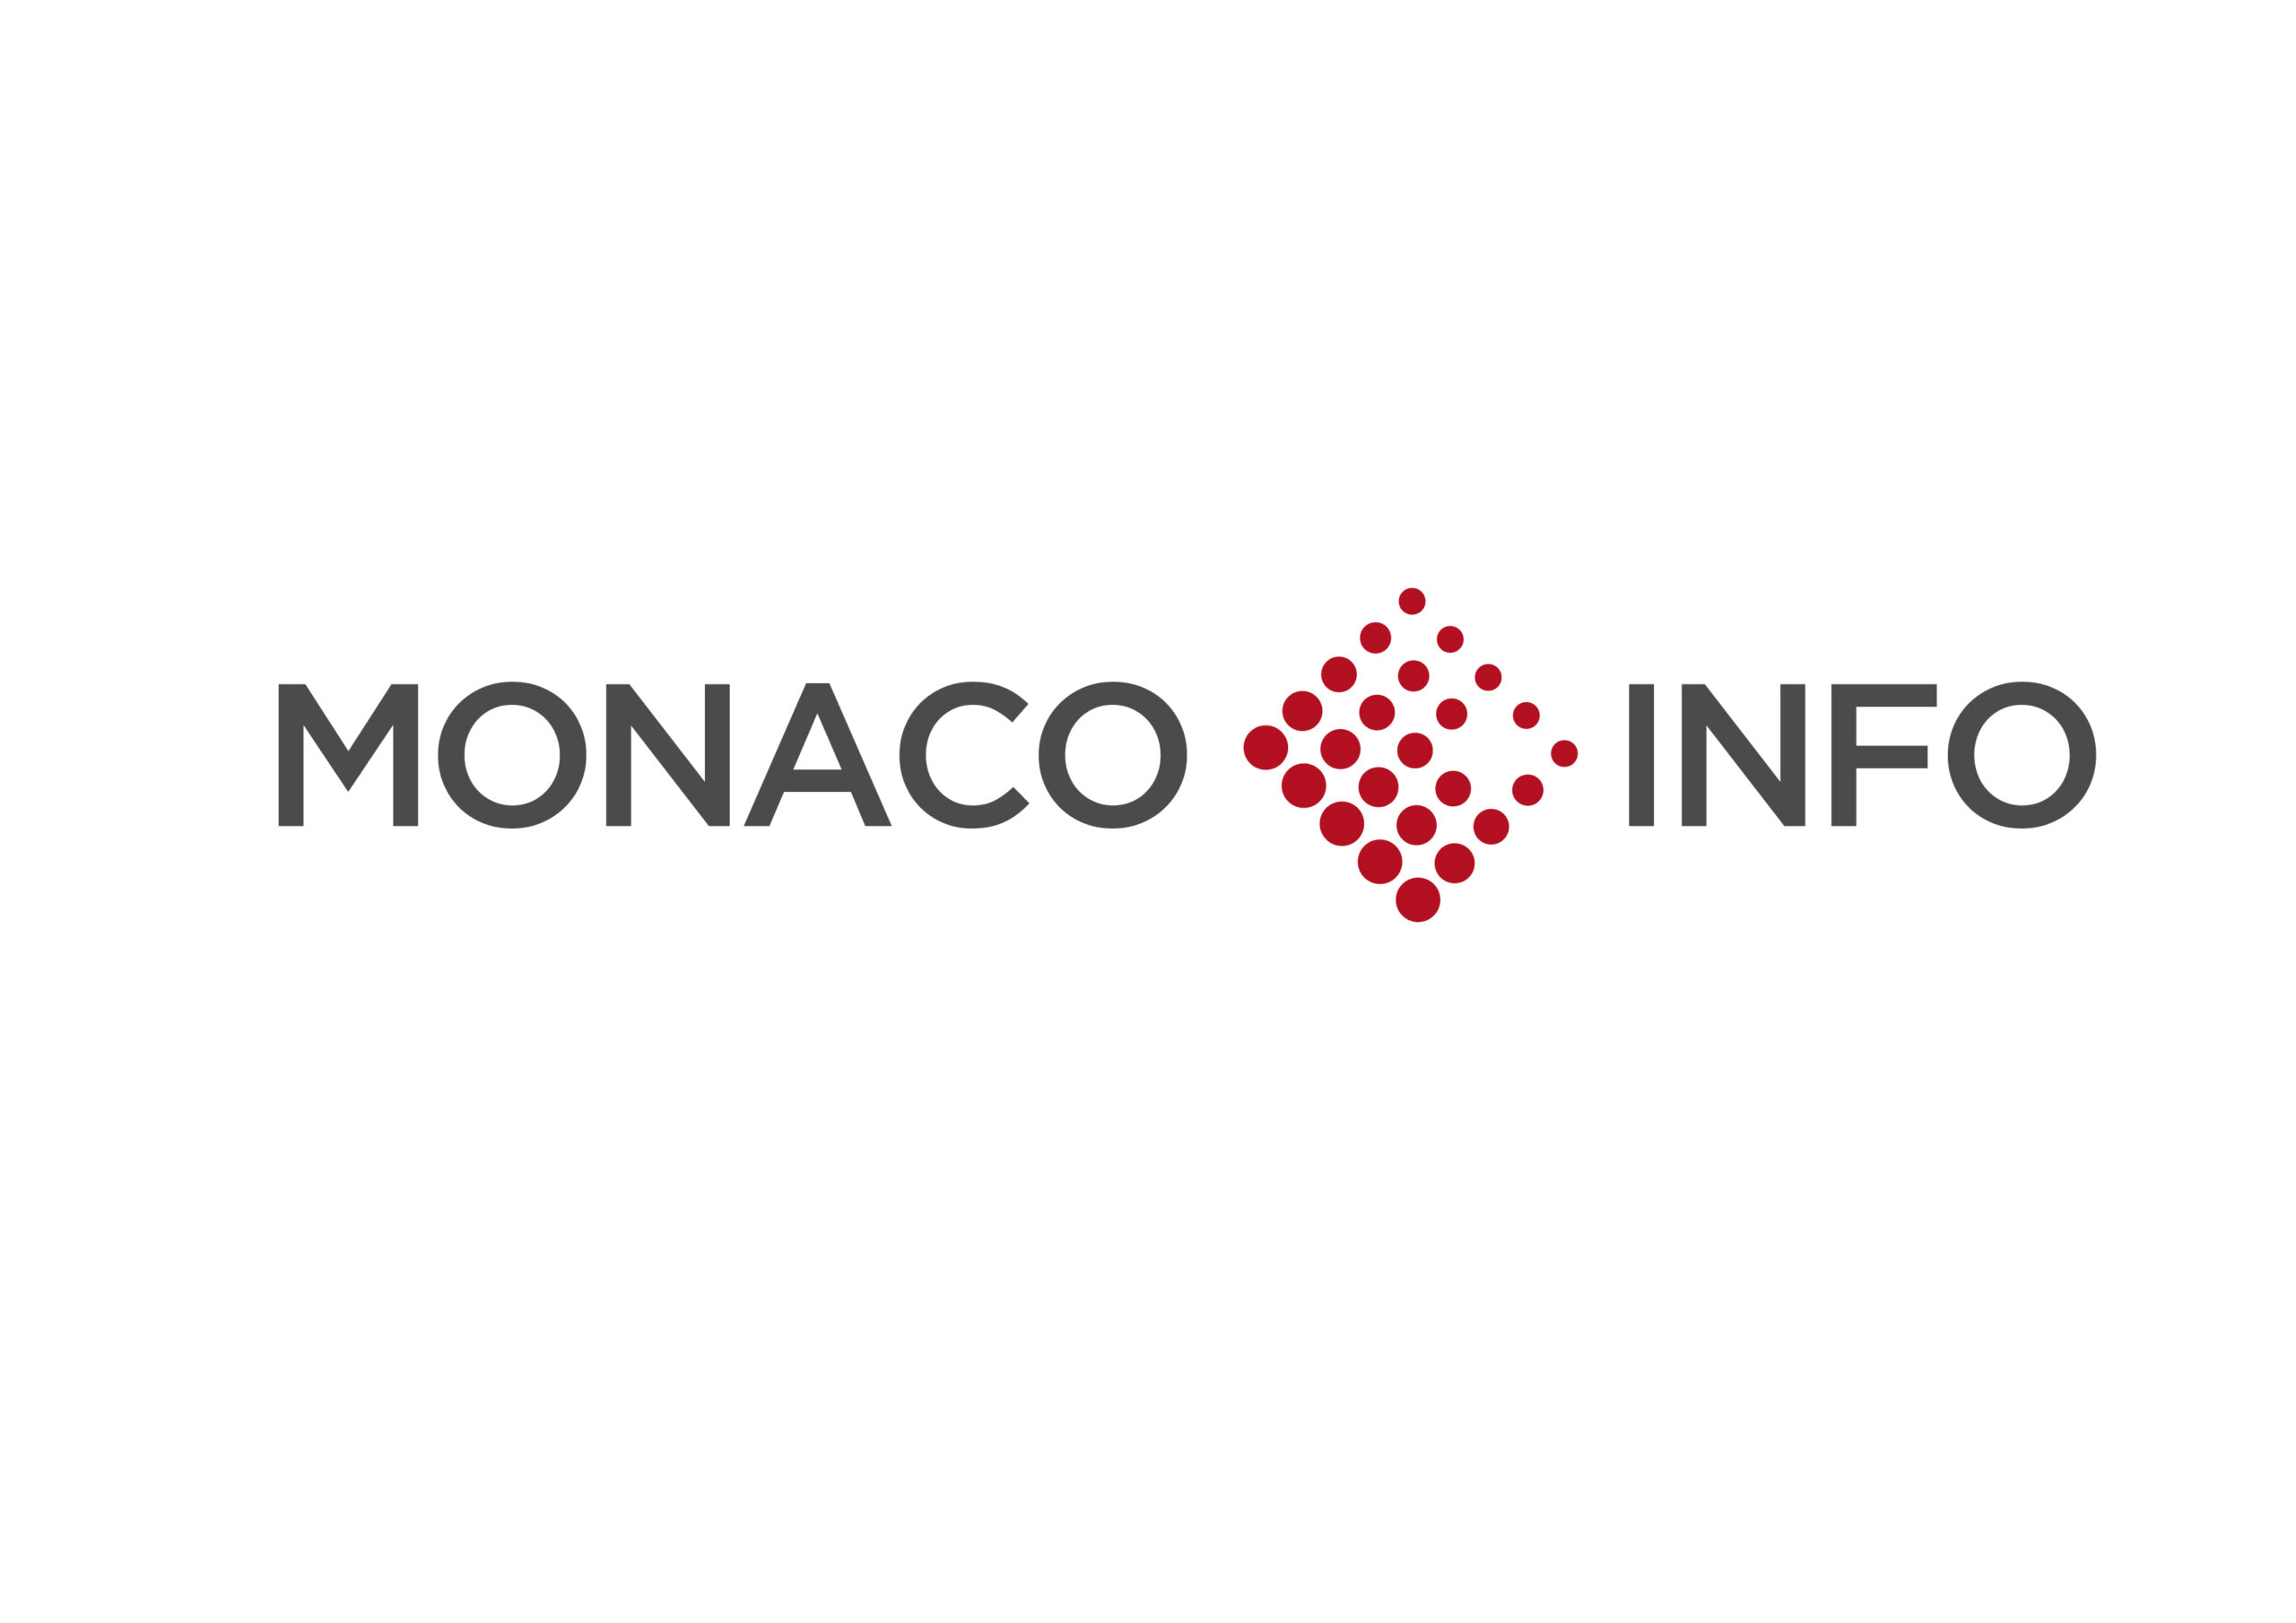 Monaco Info x Monaco